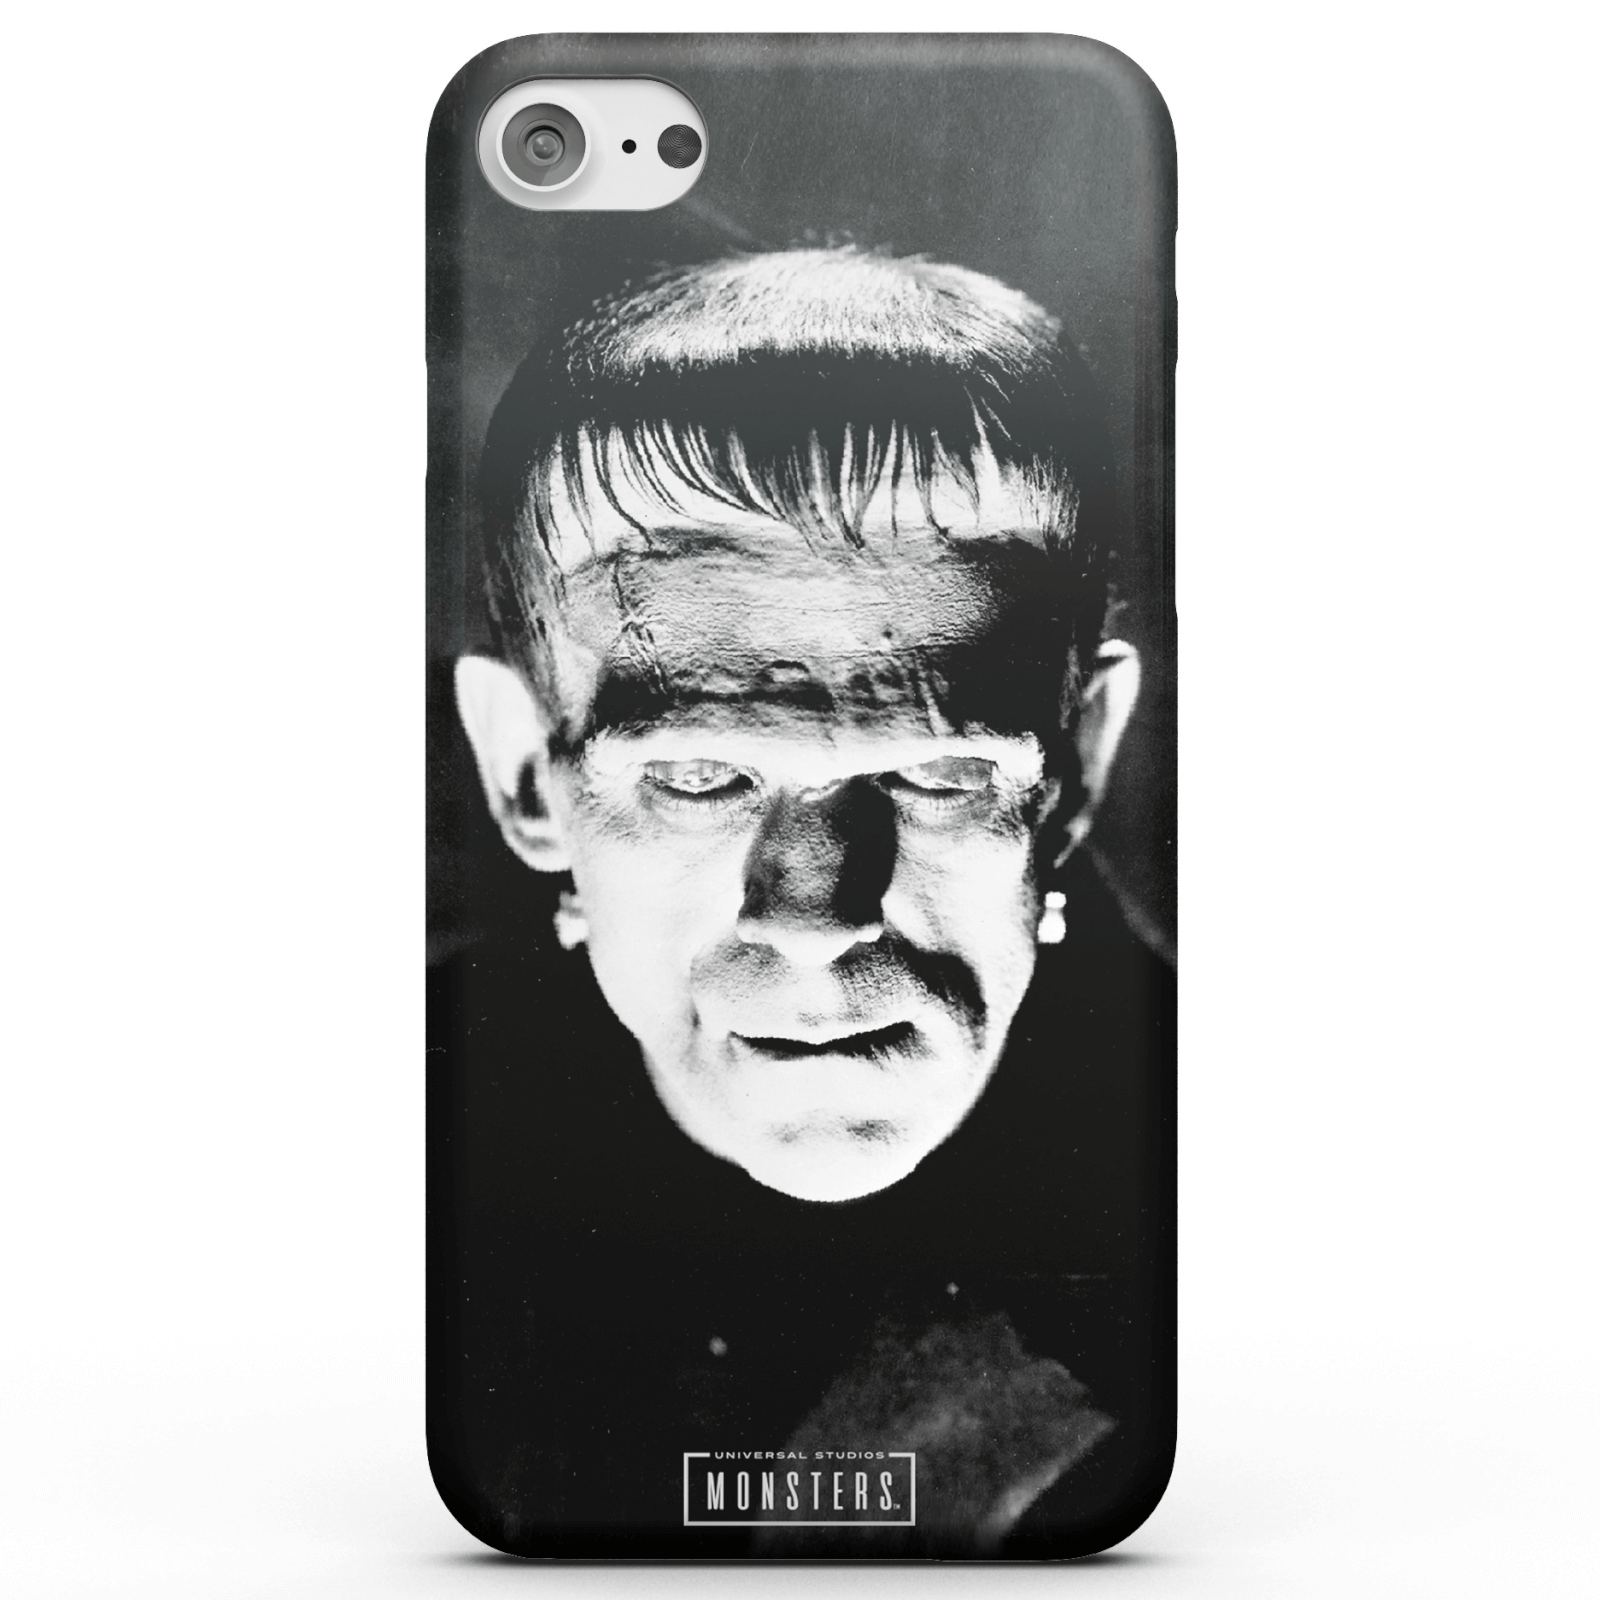 Universal Monsters Frankenstein Classic Smartphone Hülle für iPhone und Android - iPhone 6 - Tough Hülle Glänzend